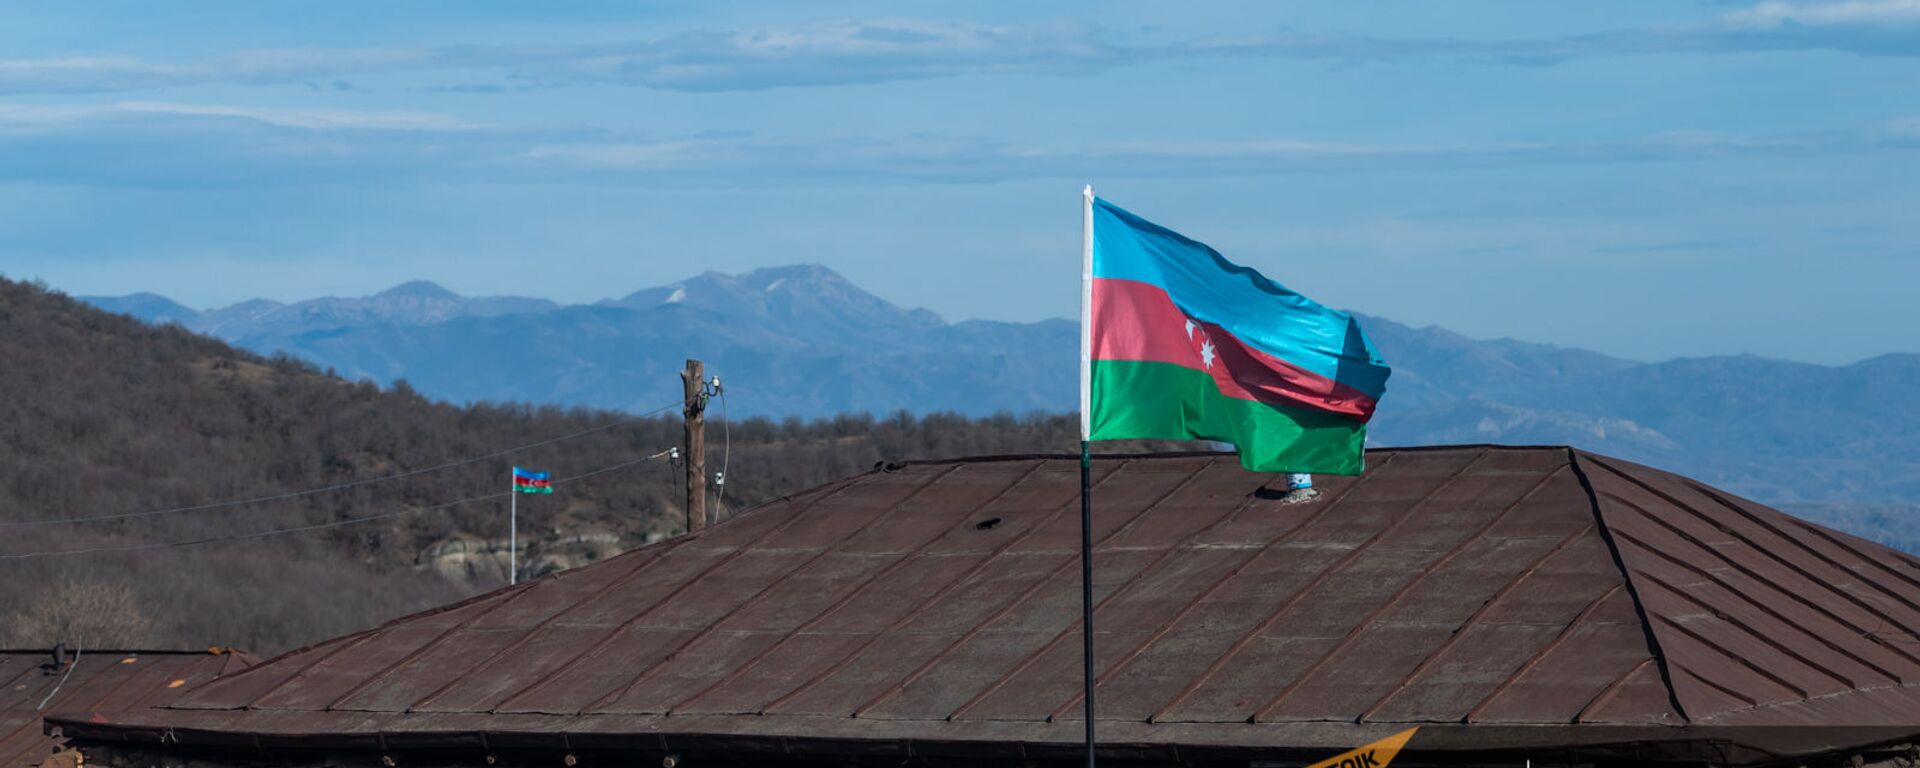 Азербайджанские флаги в селе Шурнух Сюникской области - Sputnik Армения, 1920, 07.03.2021